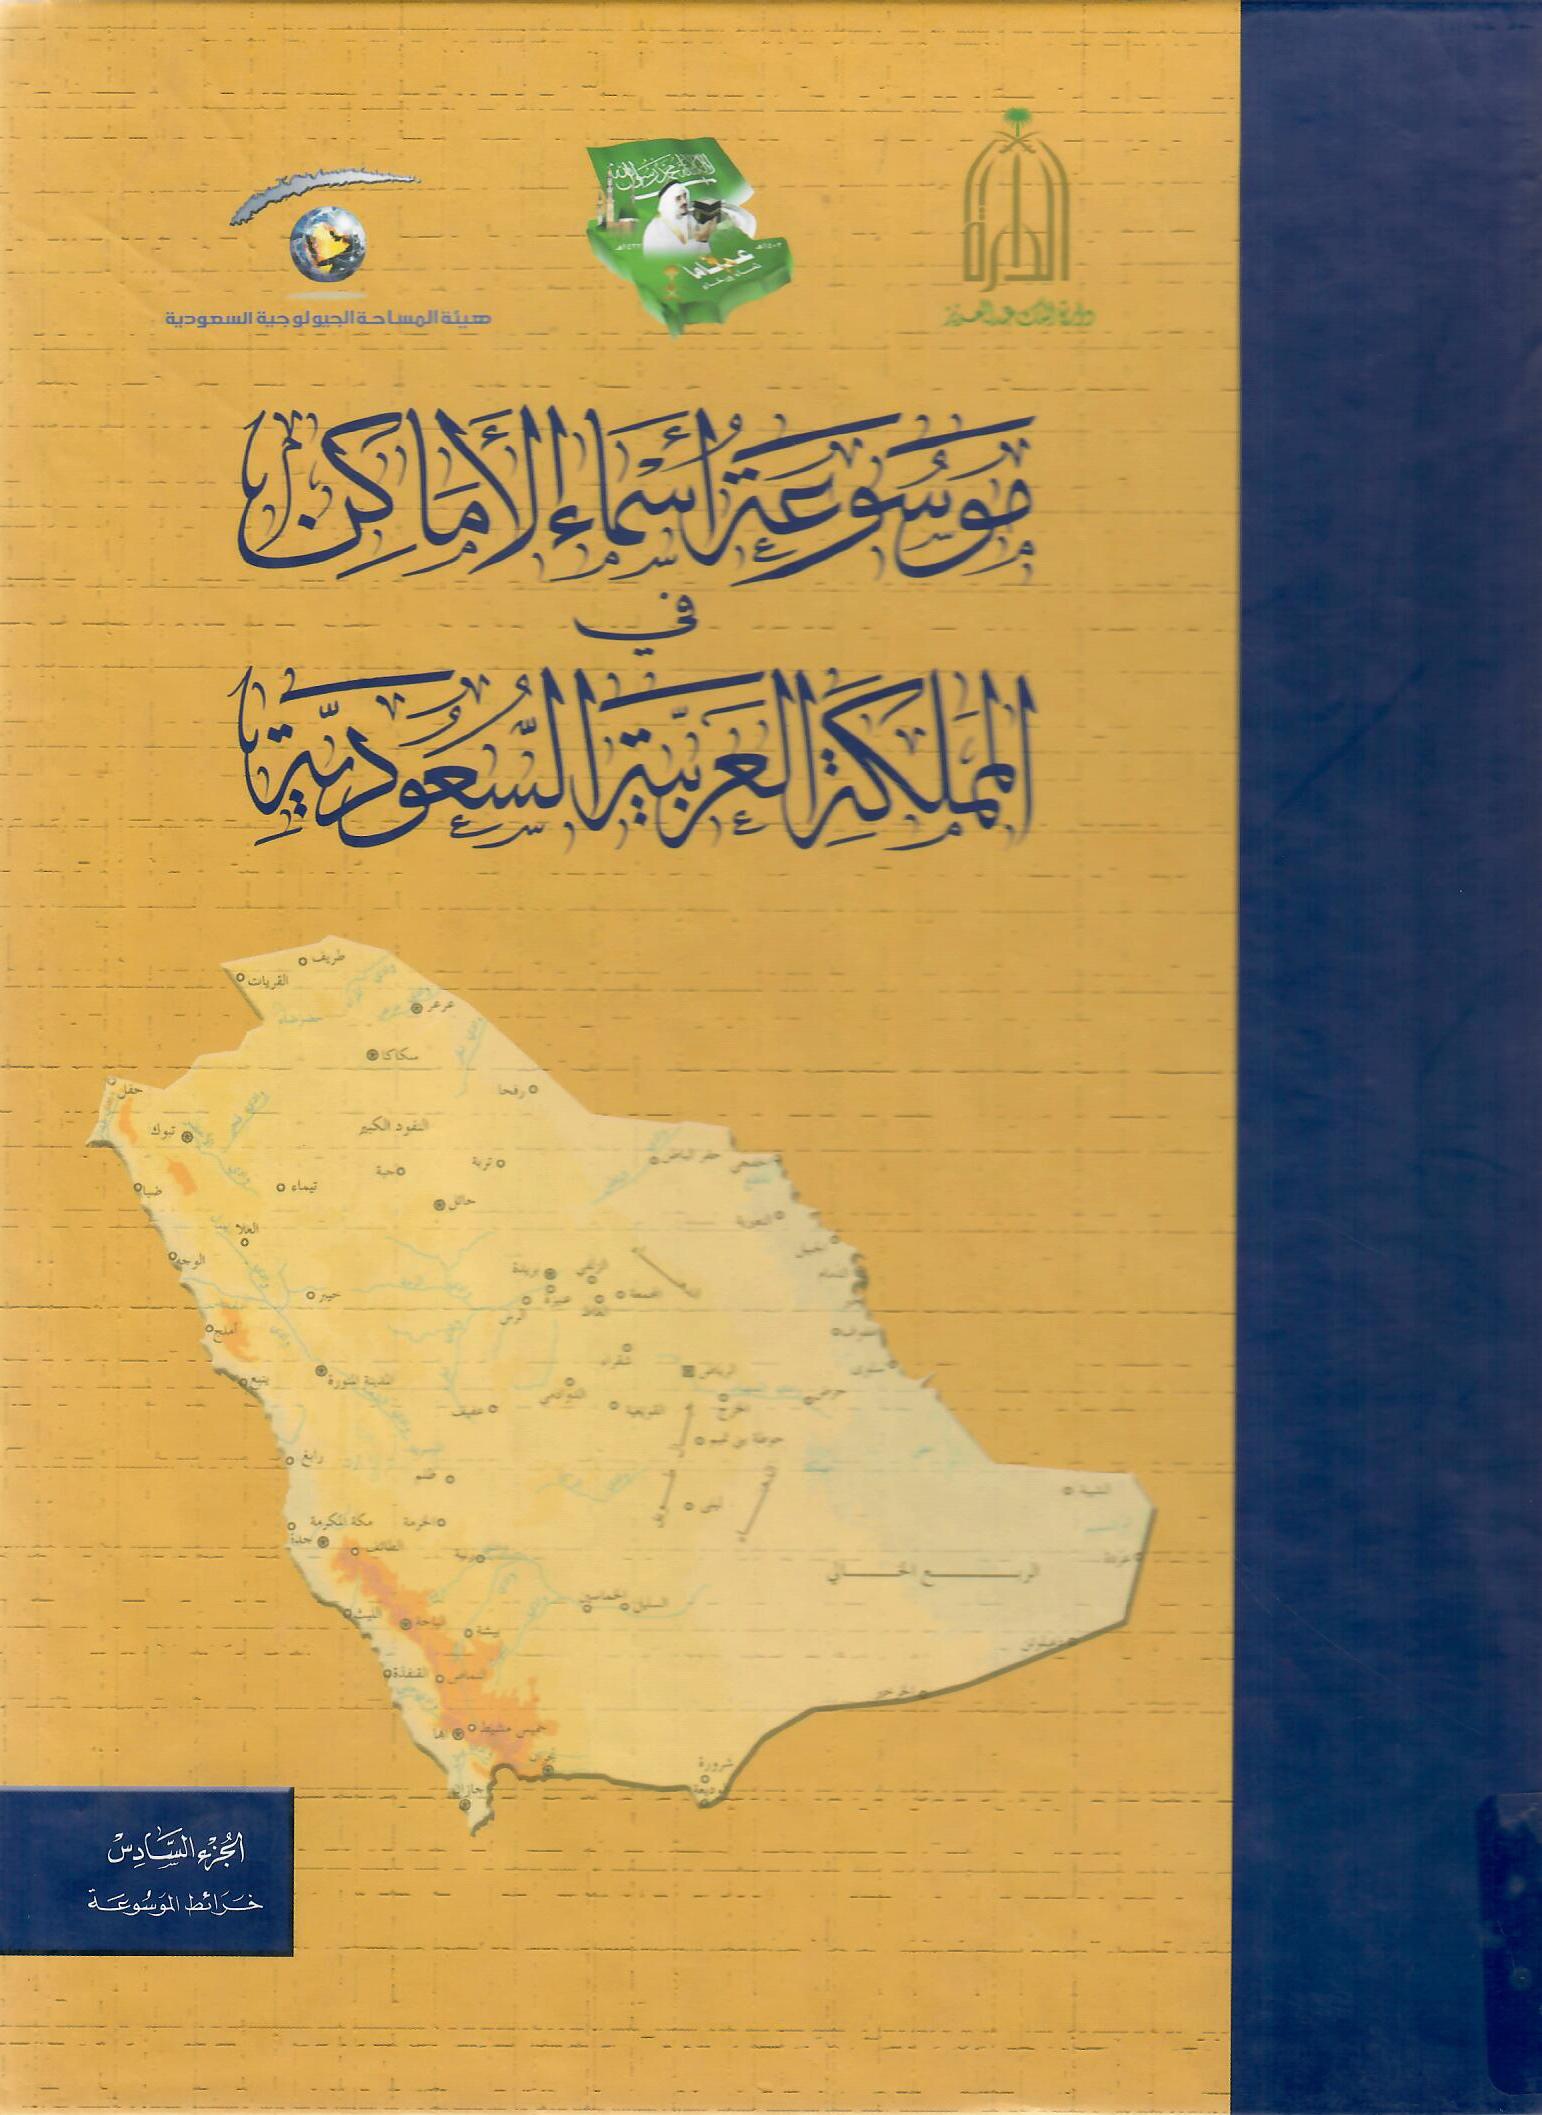 موسوعة أسماء الأماكن في المملكة العربية السعودية الجزء السادس